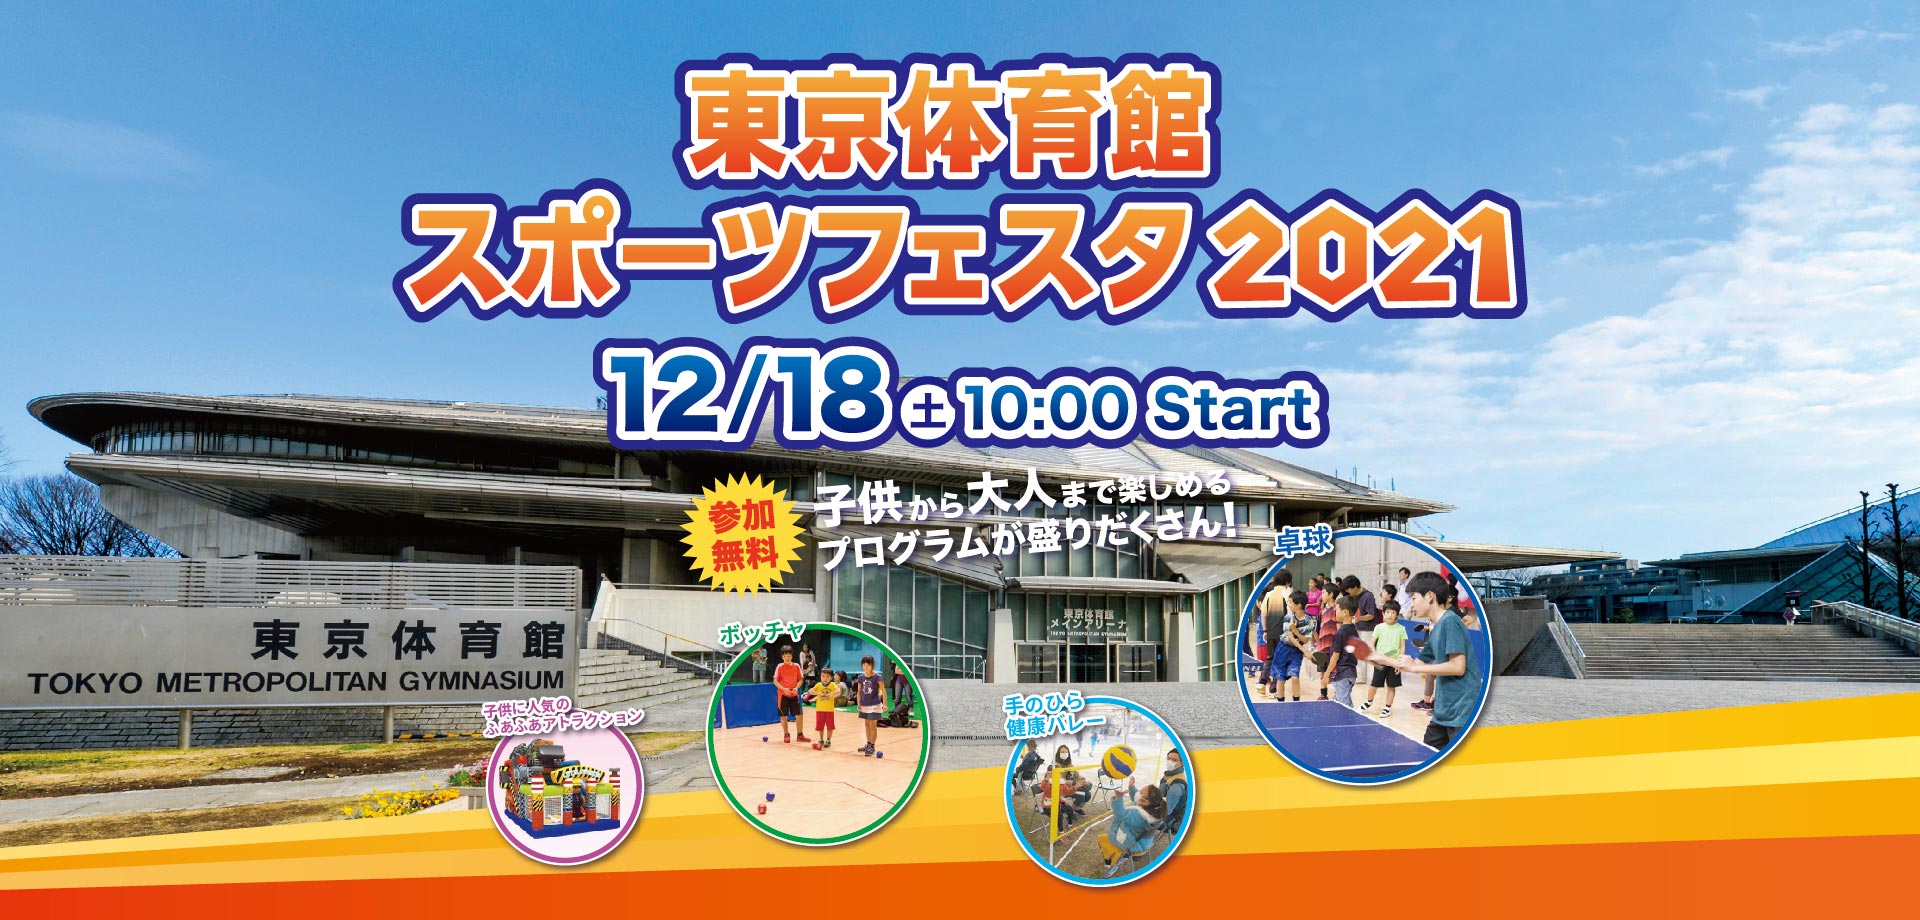 東京体育館 スポーツフェスタ2021 12月18日 土曜日 10時 スタート 参加無料 子供から大人まで楽しめるプログラムが盛りだくさん！ 卓球 ボッチャ 手のひら健康バレー ストラックアウト